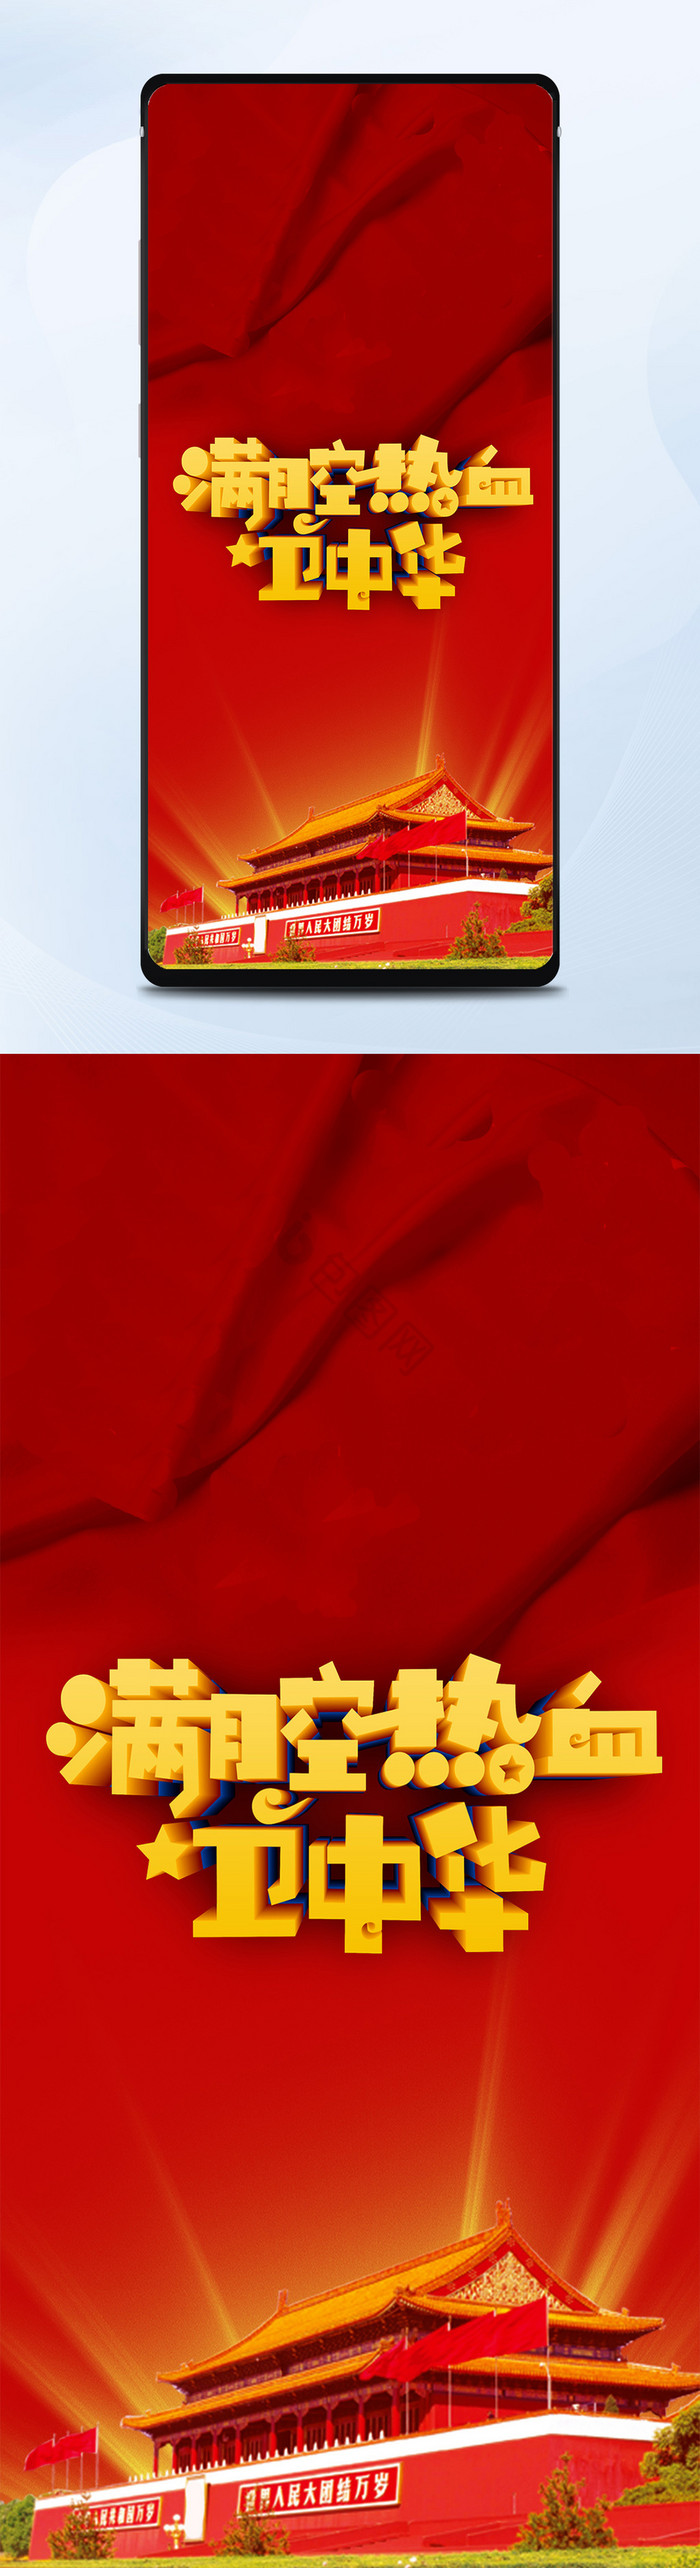 红色风格爱国手机配图